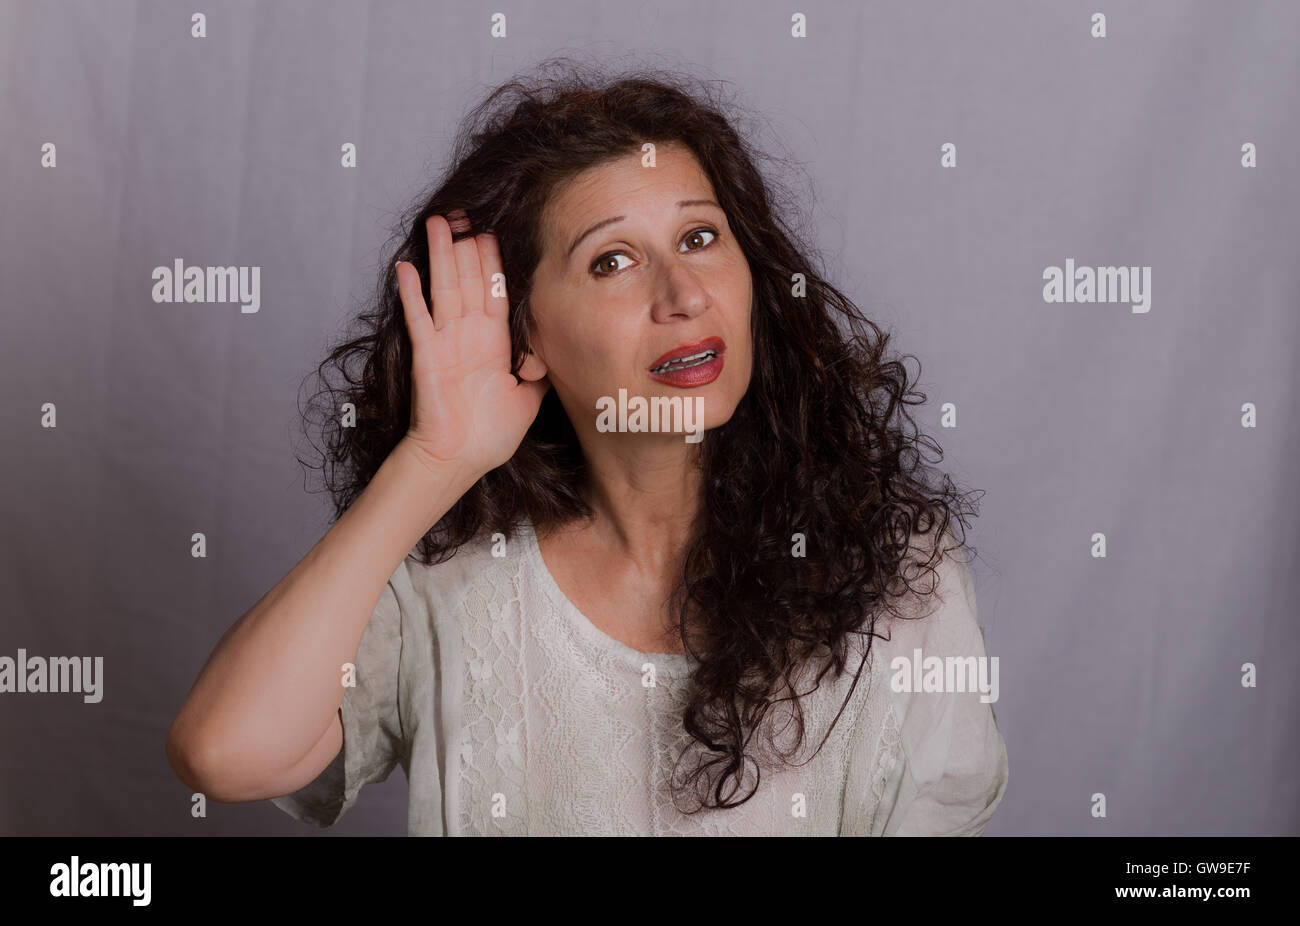 Reife Frau Platzierung Hand auf hören wegen Hörproblemen oder Beeinträchtigung auf grauem Hintergrund Stockfoto